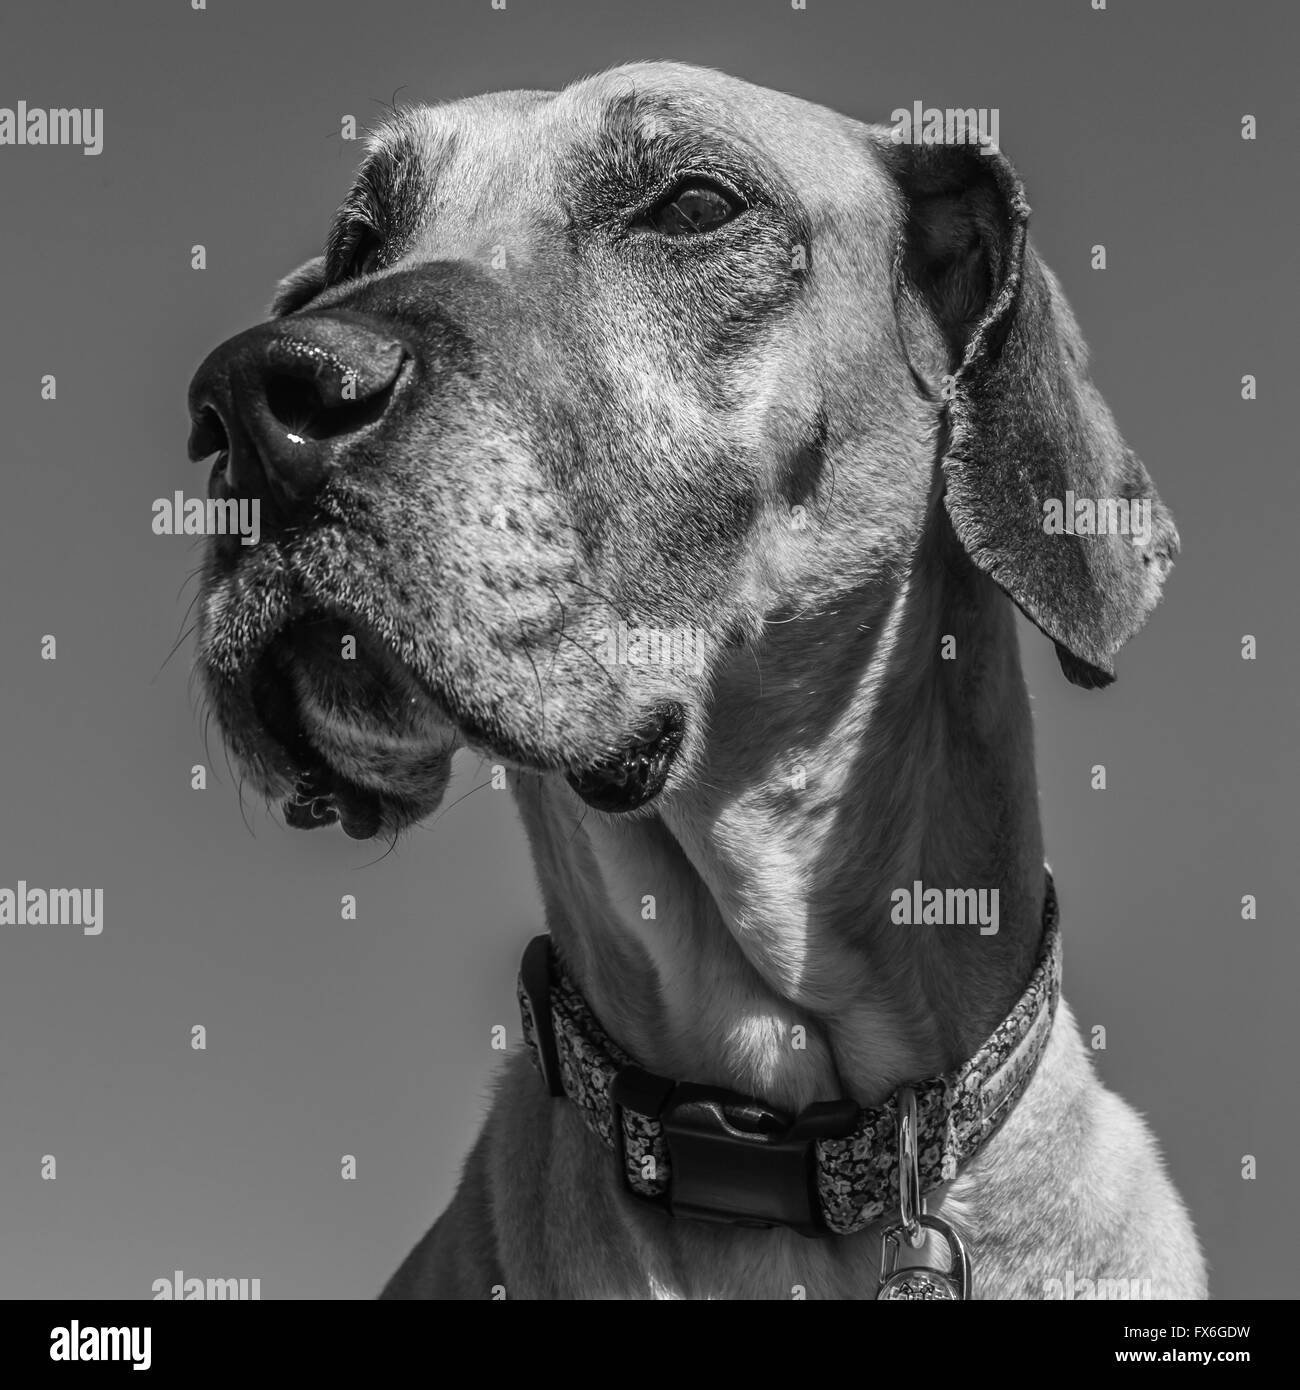 Tan/beige/marrone Alano contro il cielo blu, ritratto, cane anziano con muso grigio Foto Stock